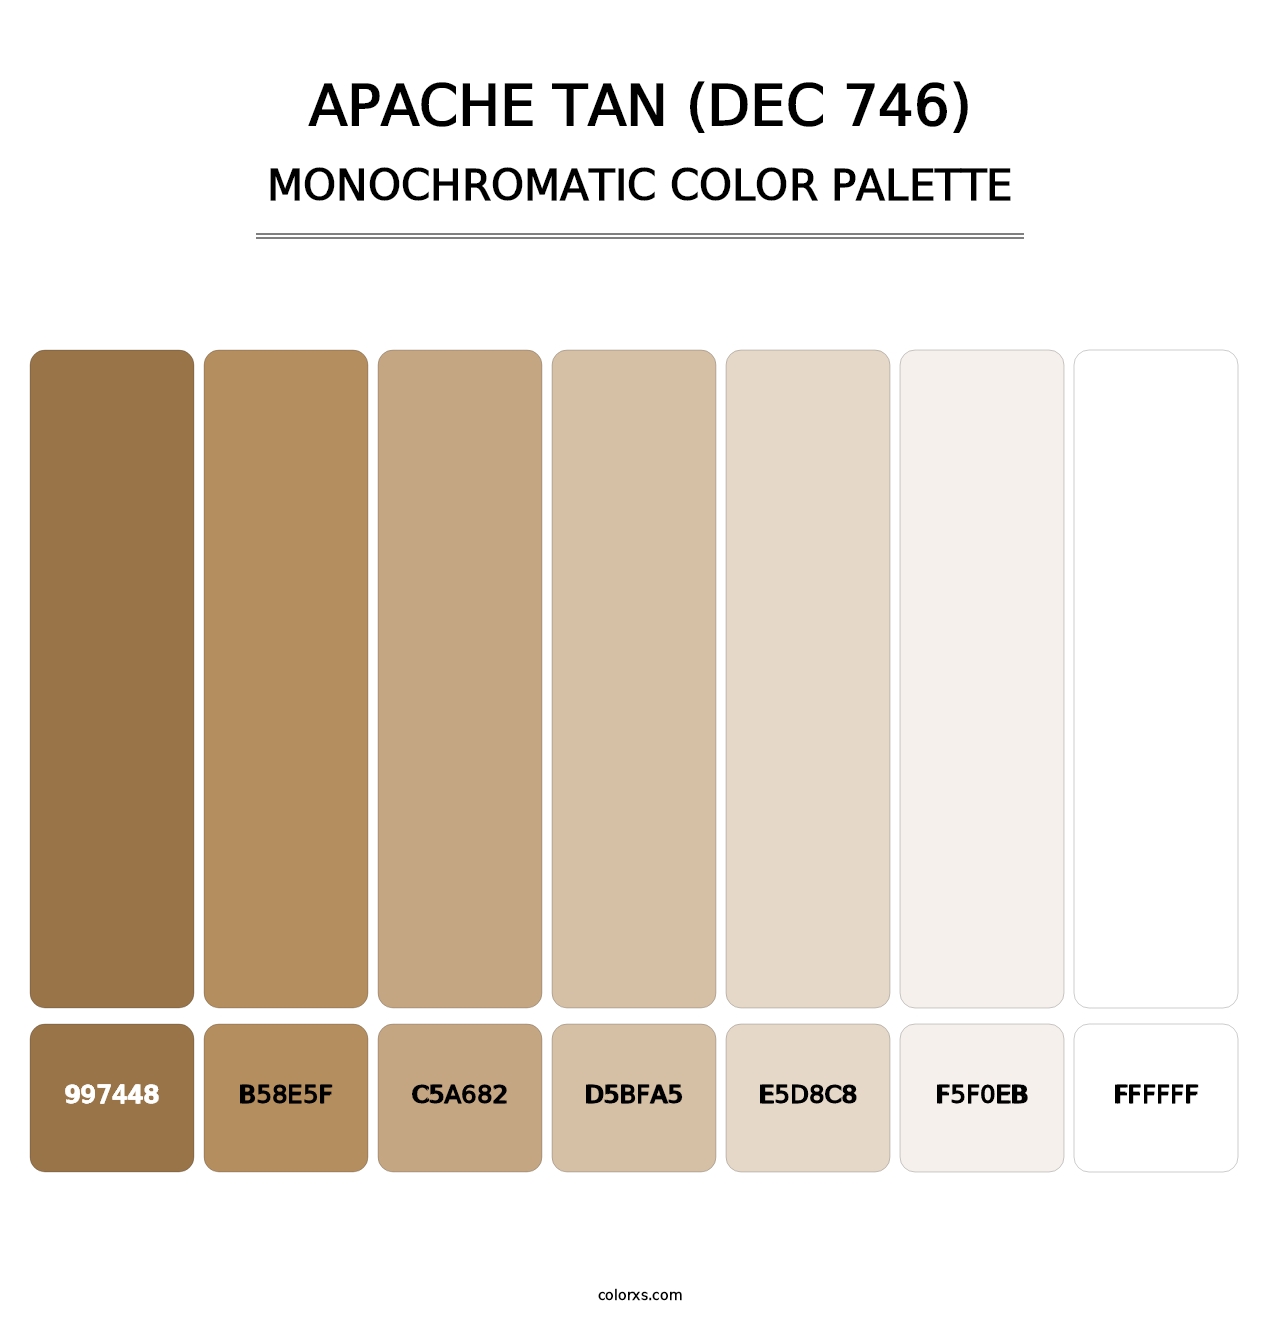 Apache Tan (DEC 746) - Monochromatic Color Palette